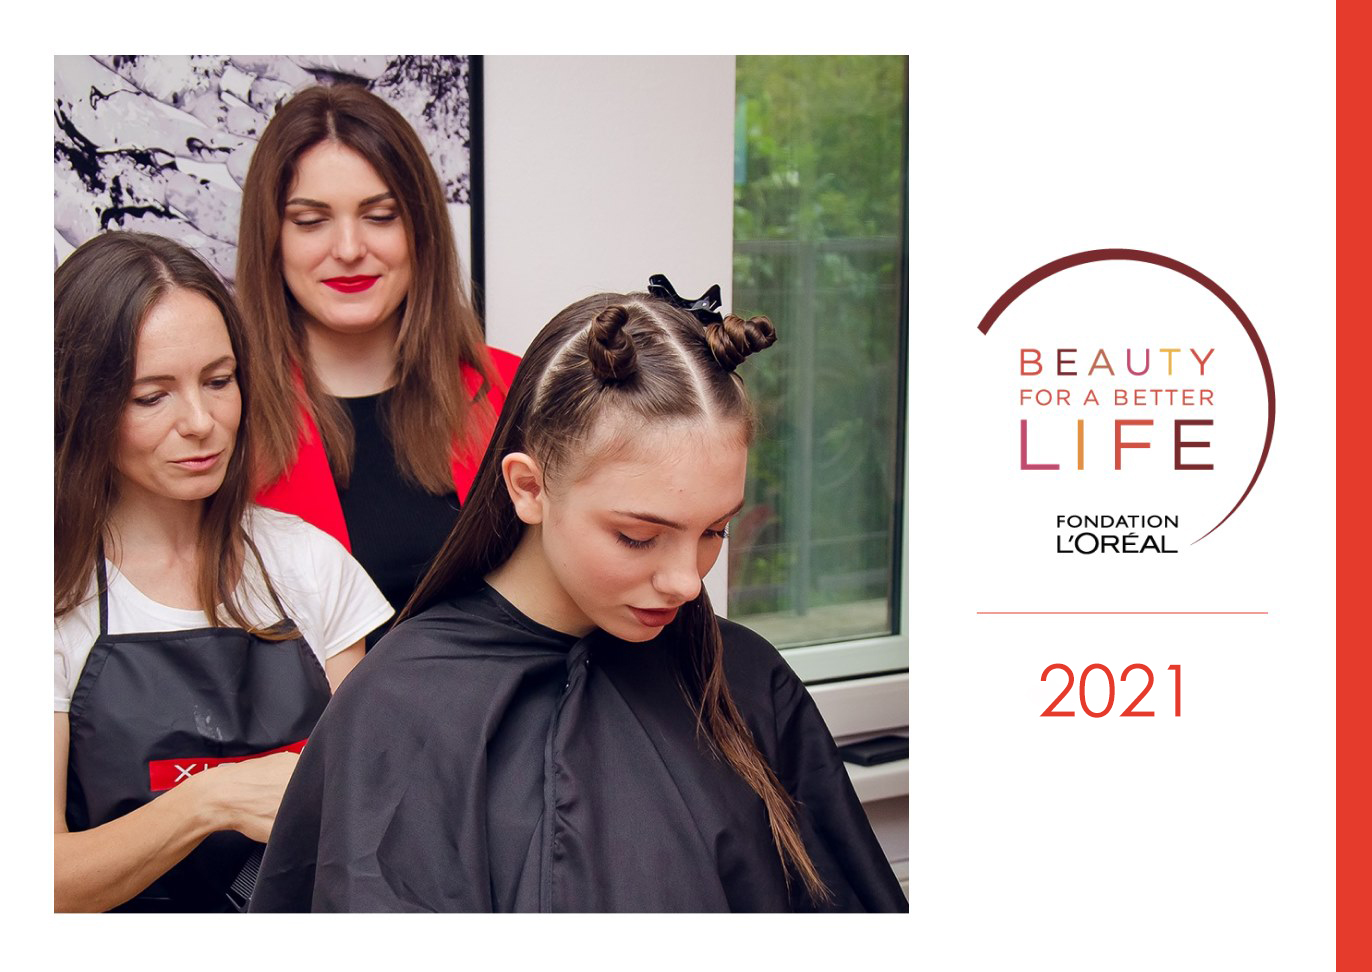 L’Oréal Украина начинает 5-й сезон общеобразовательной программы "Красота для всех"